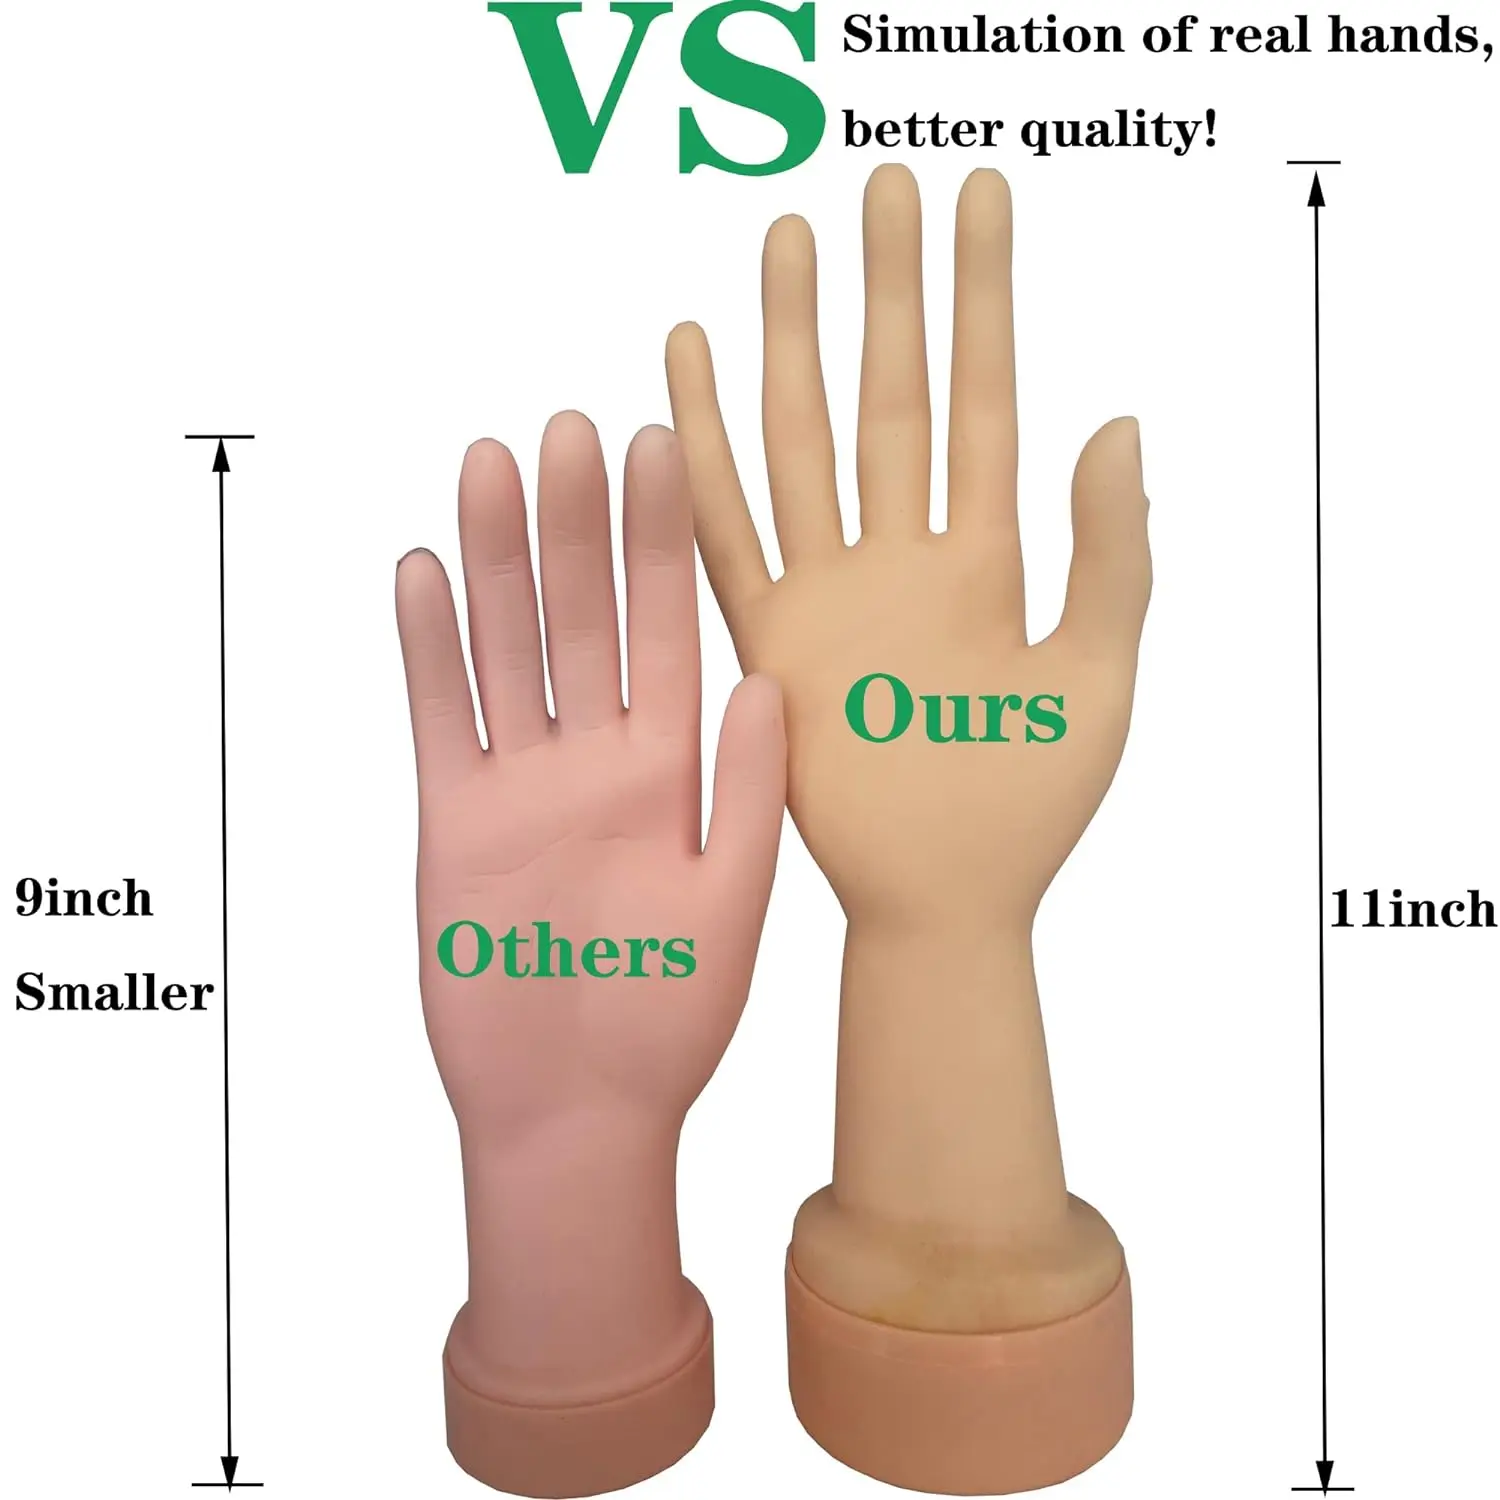 Oefen flexibele mannequin hand nail display met zachte vingers en oefen manicure nagels hand met nephand